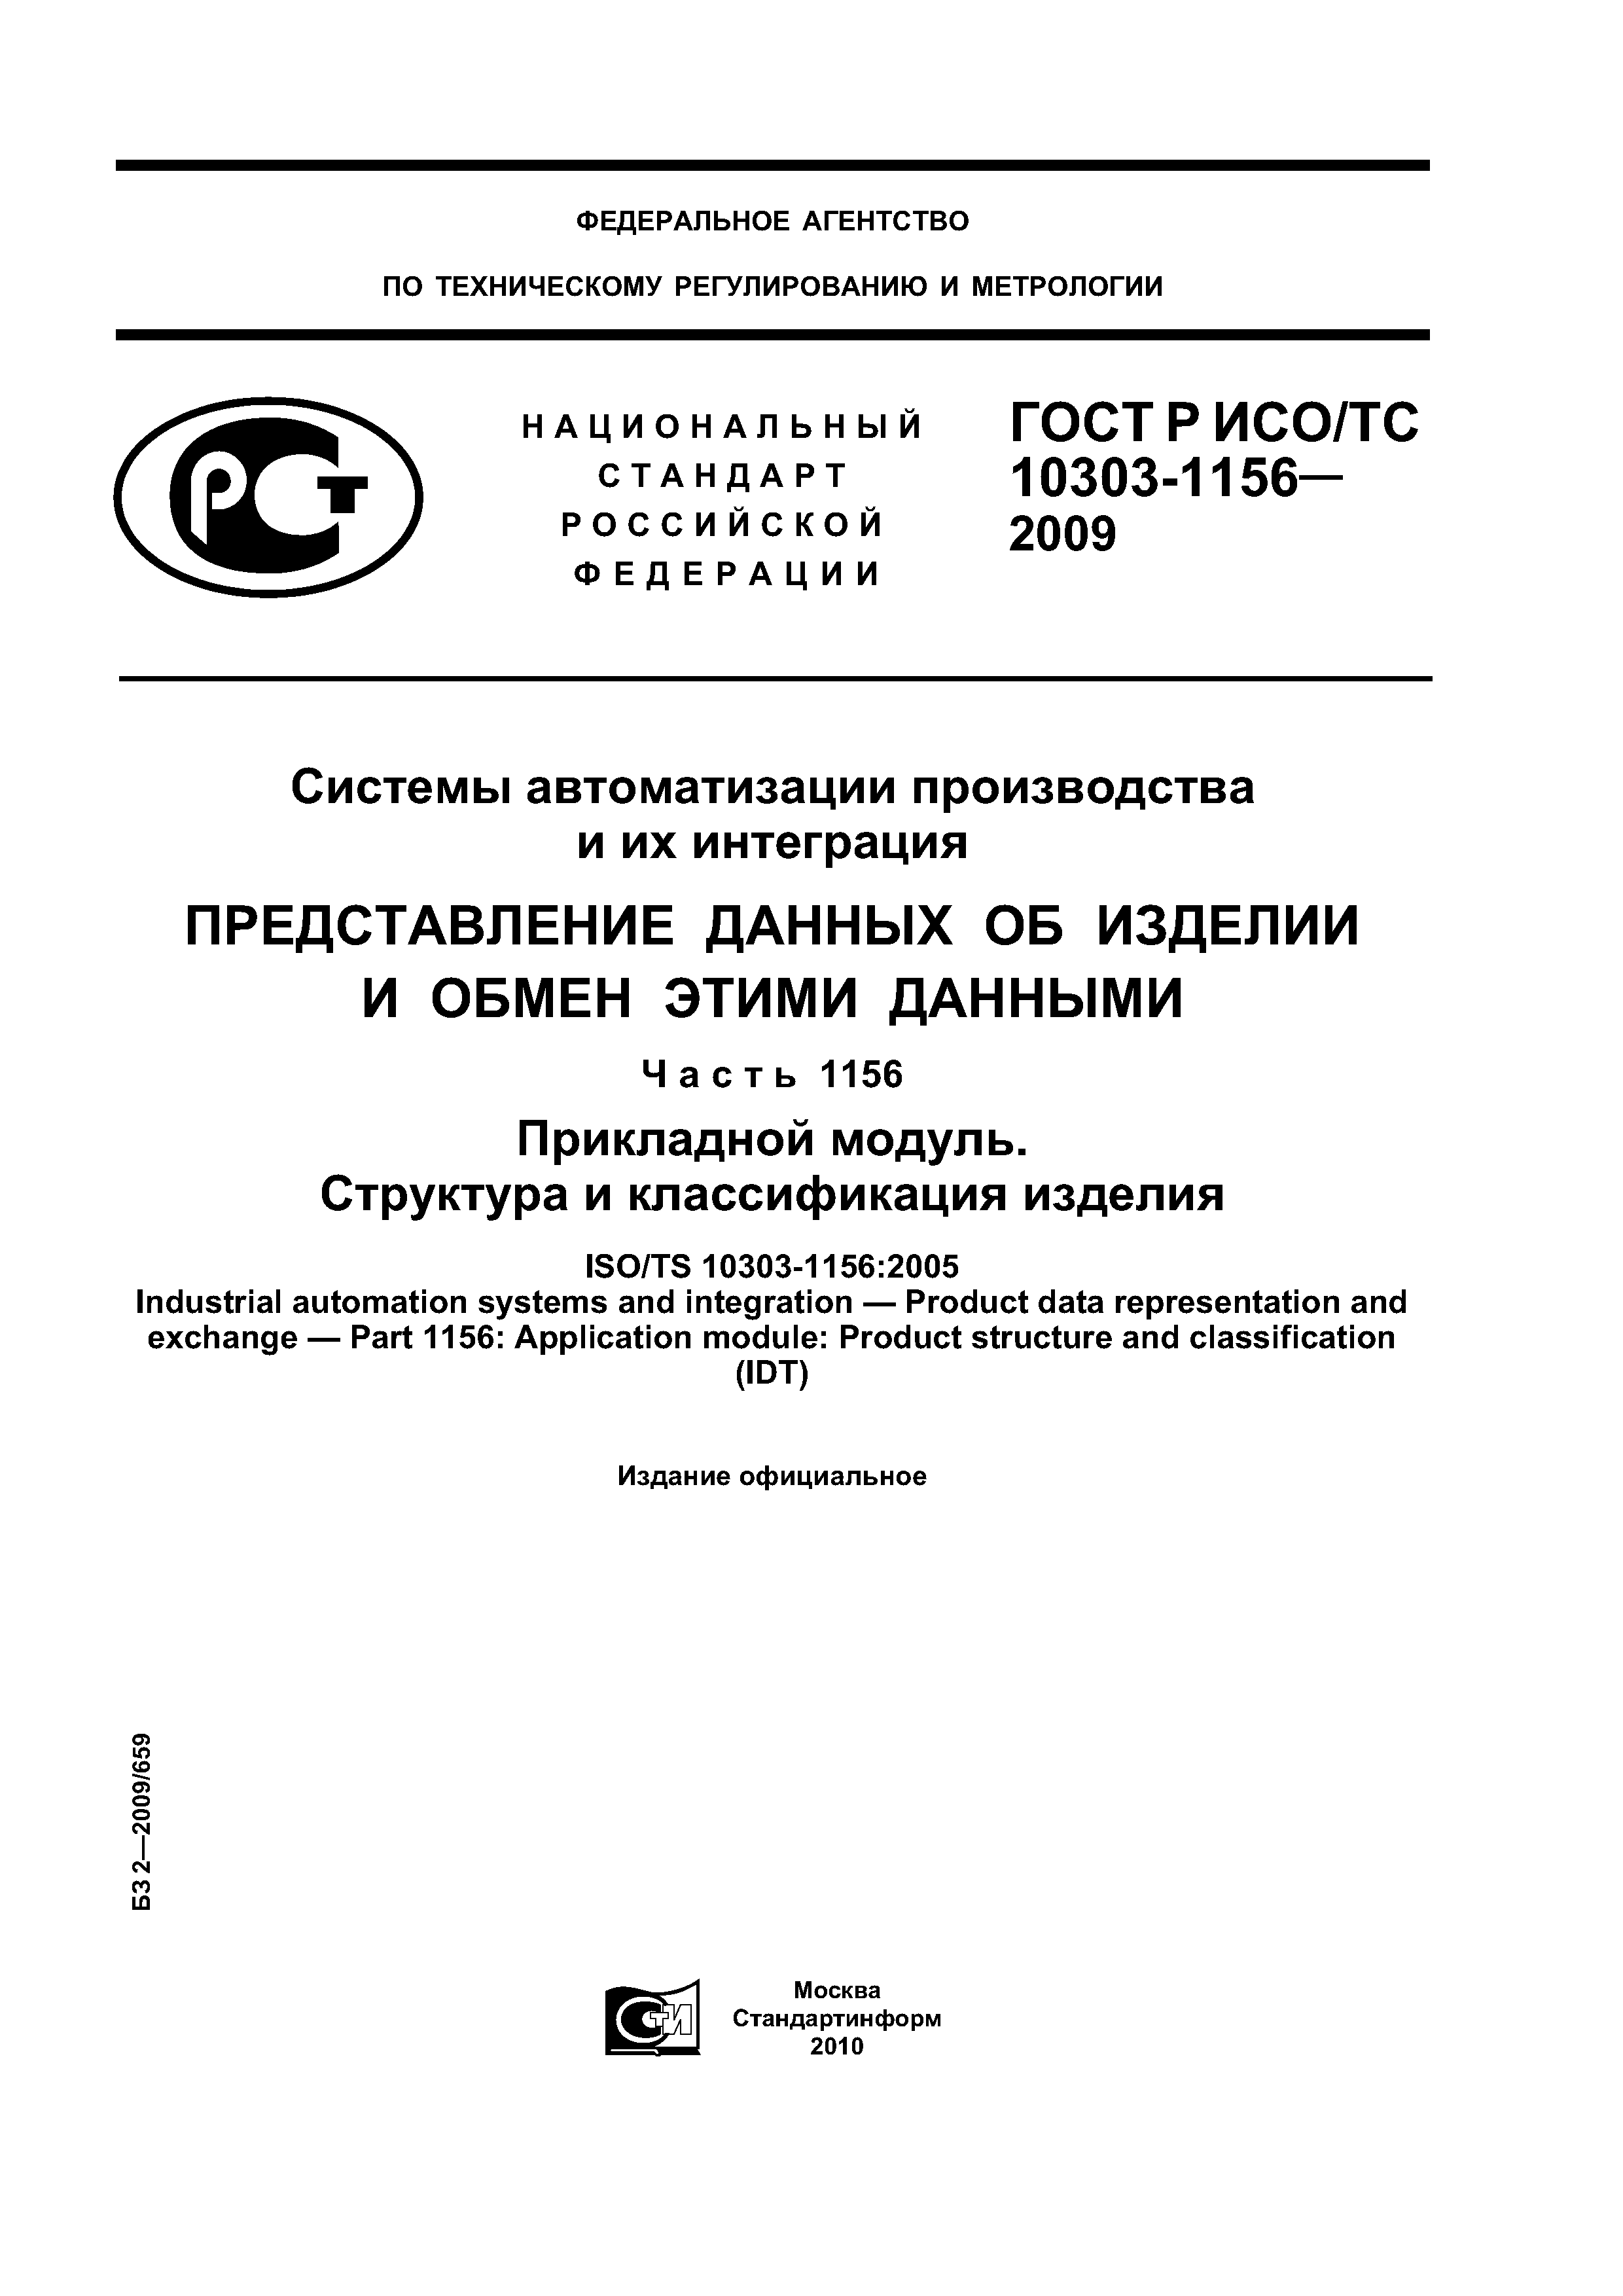 ГОСТ Р ИСО/ТС 10303-1156-2009